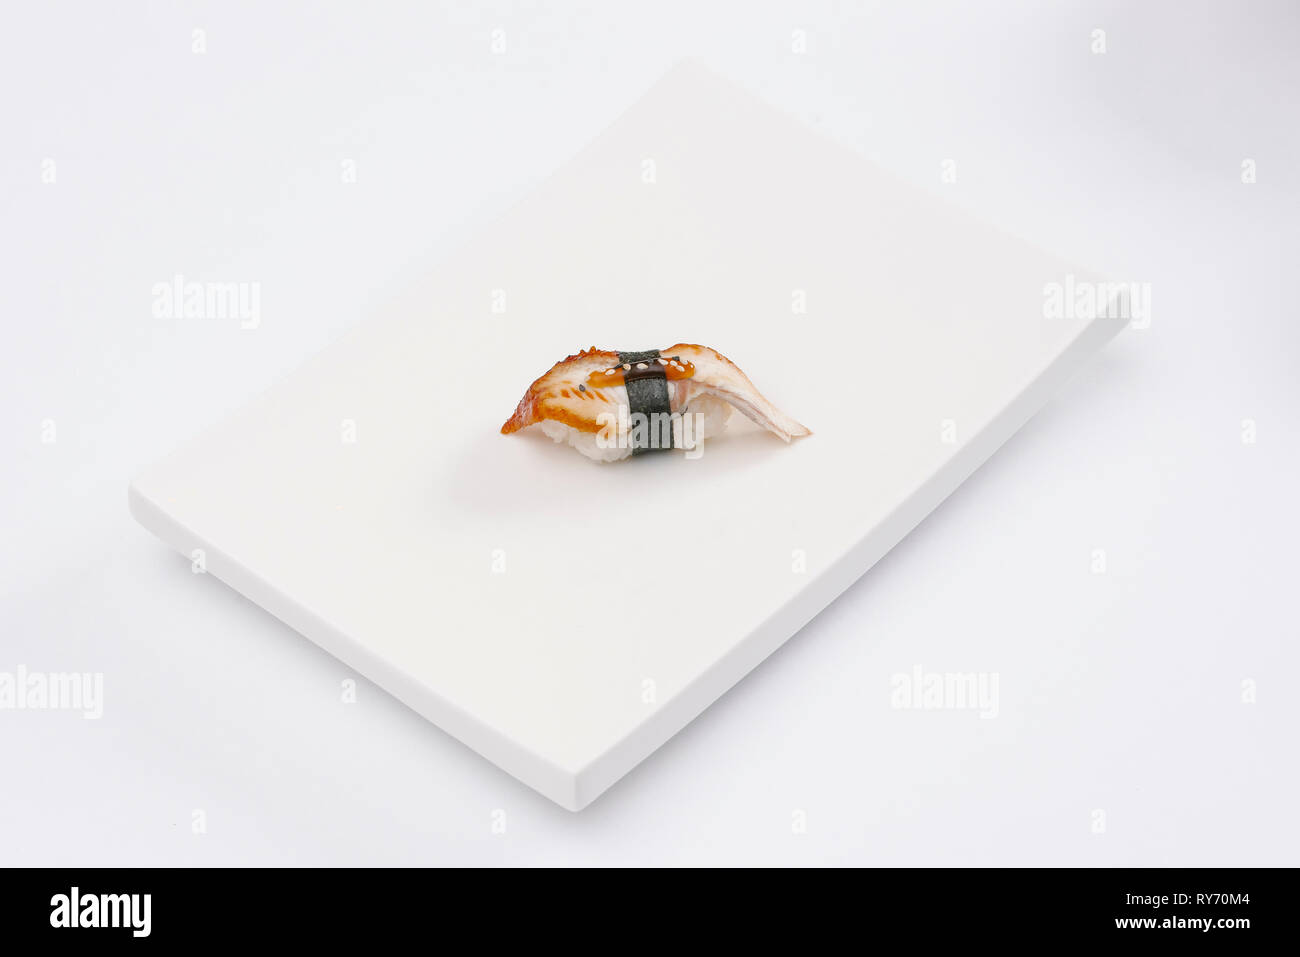 High angle view of sushi servi dans la plaque sur fond blanc Banque D'Images